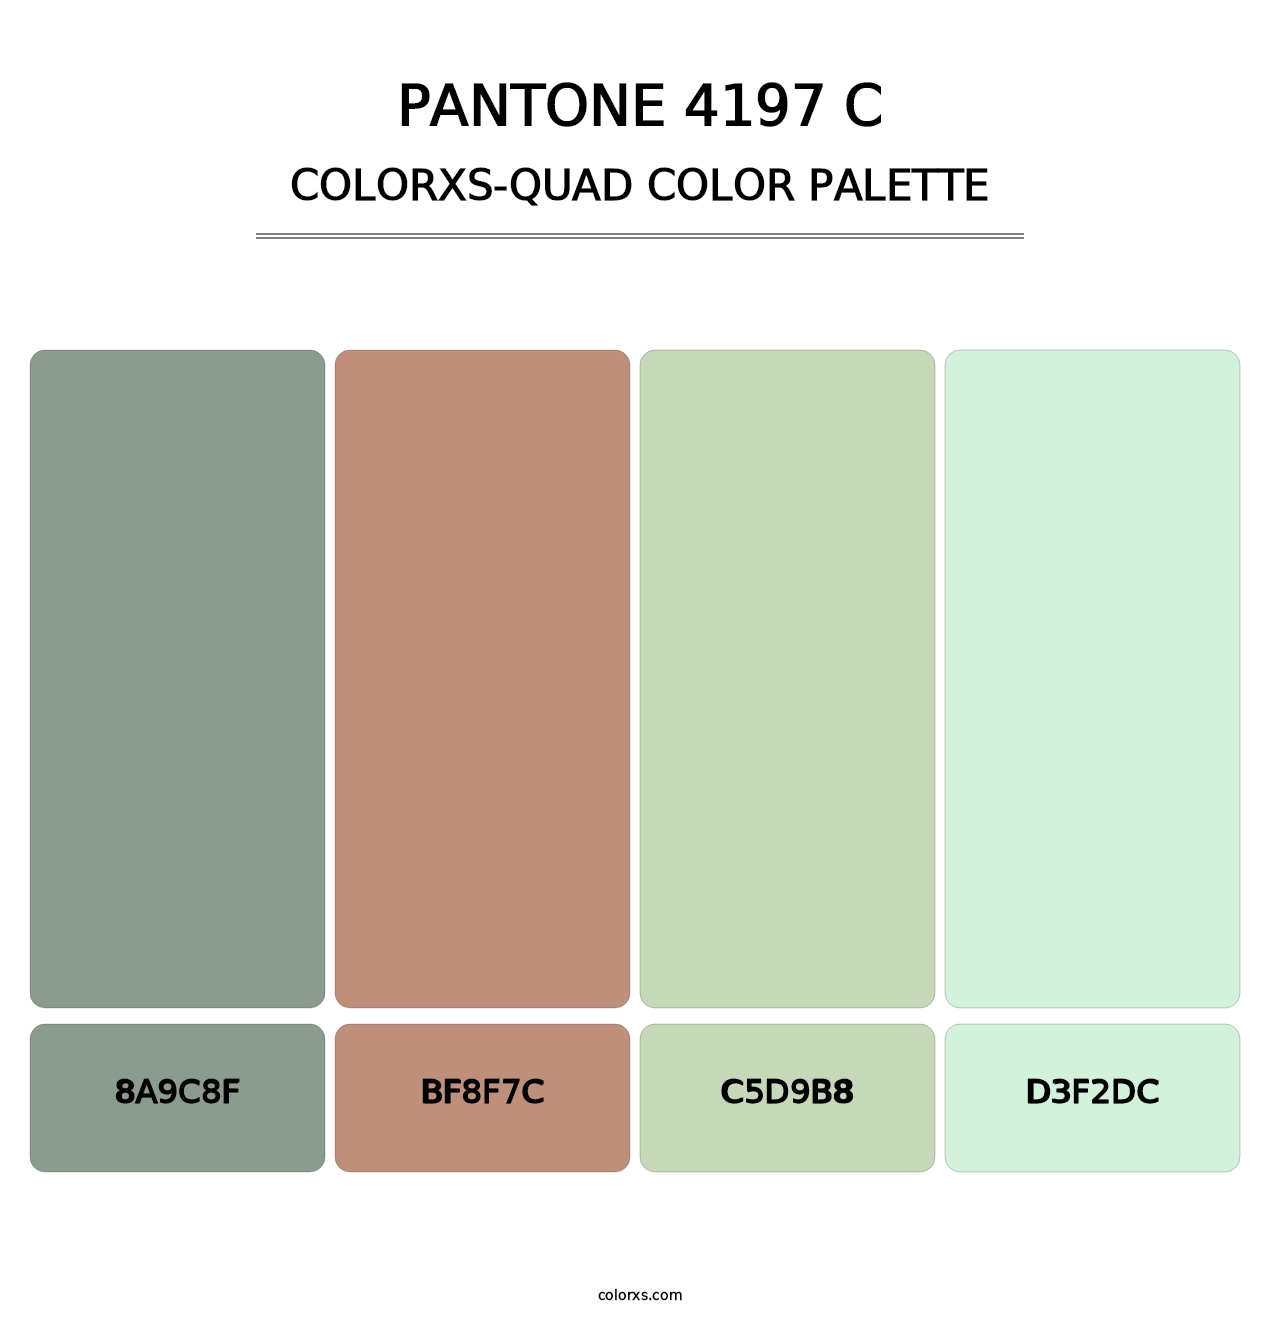 PANTONE 4197 C - Colorxs Quad Palette